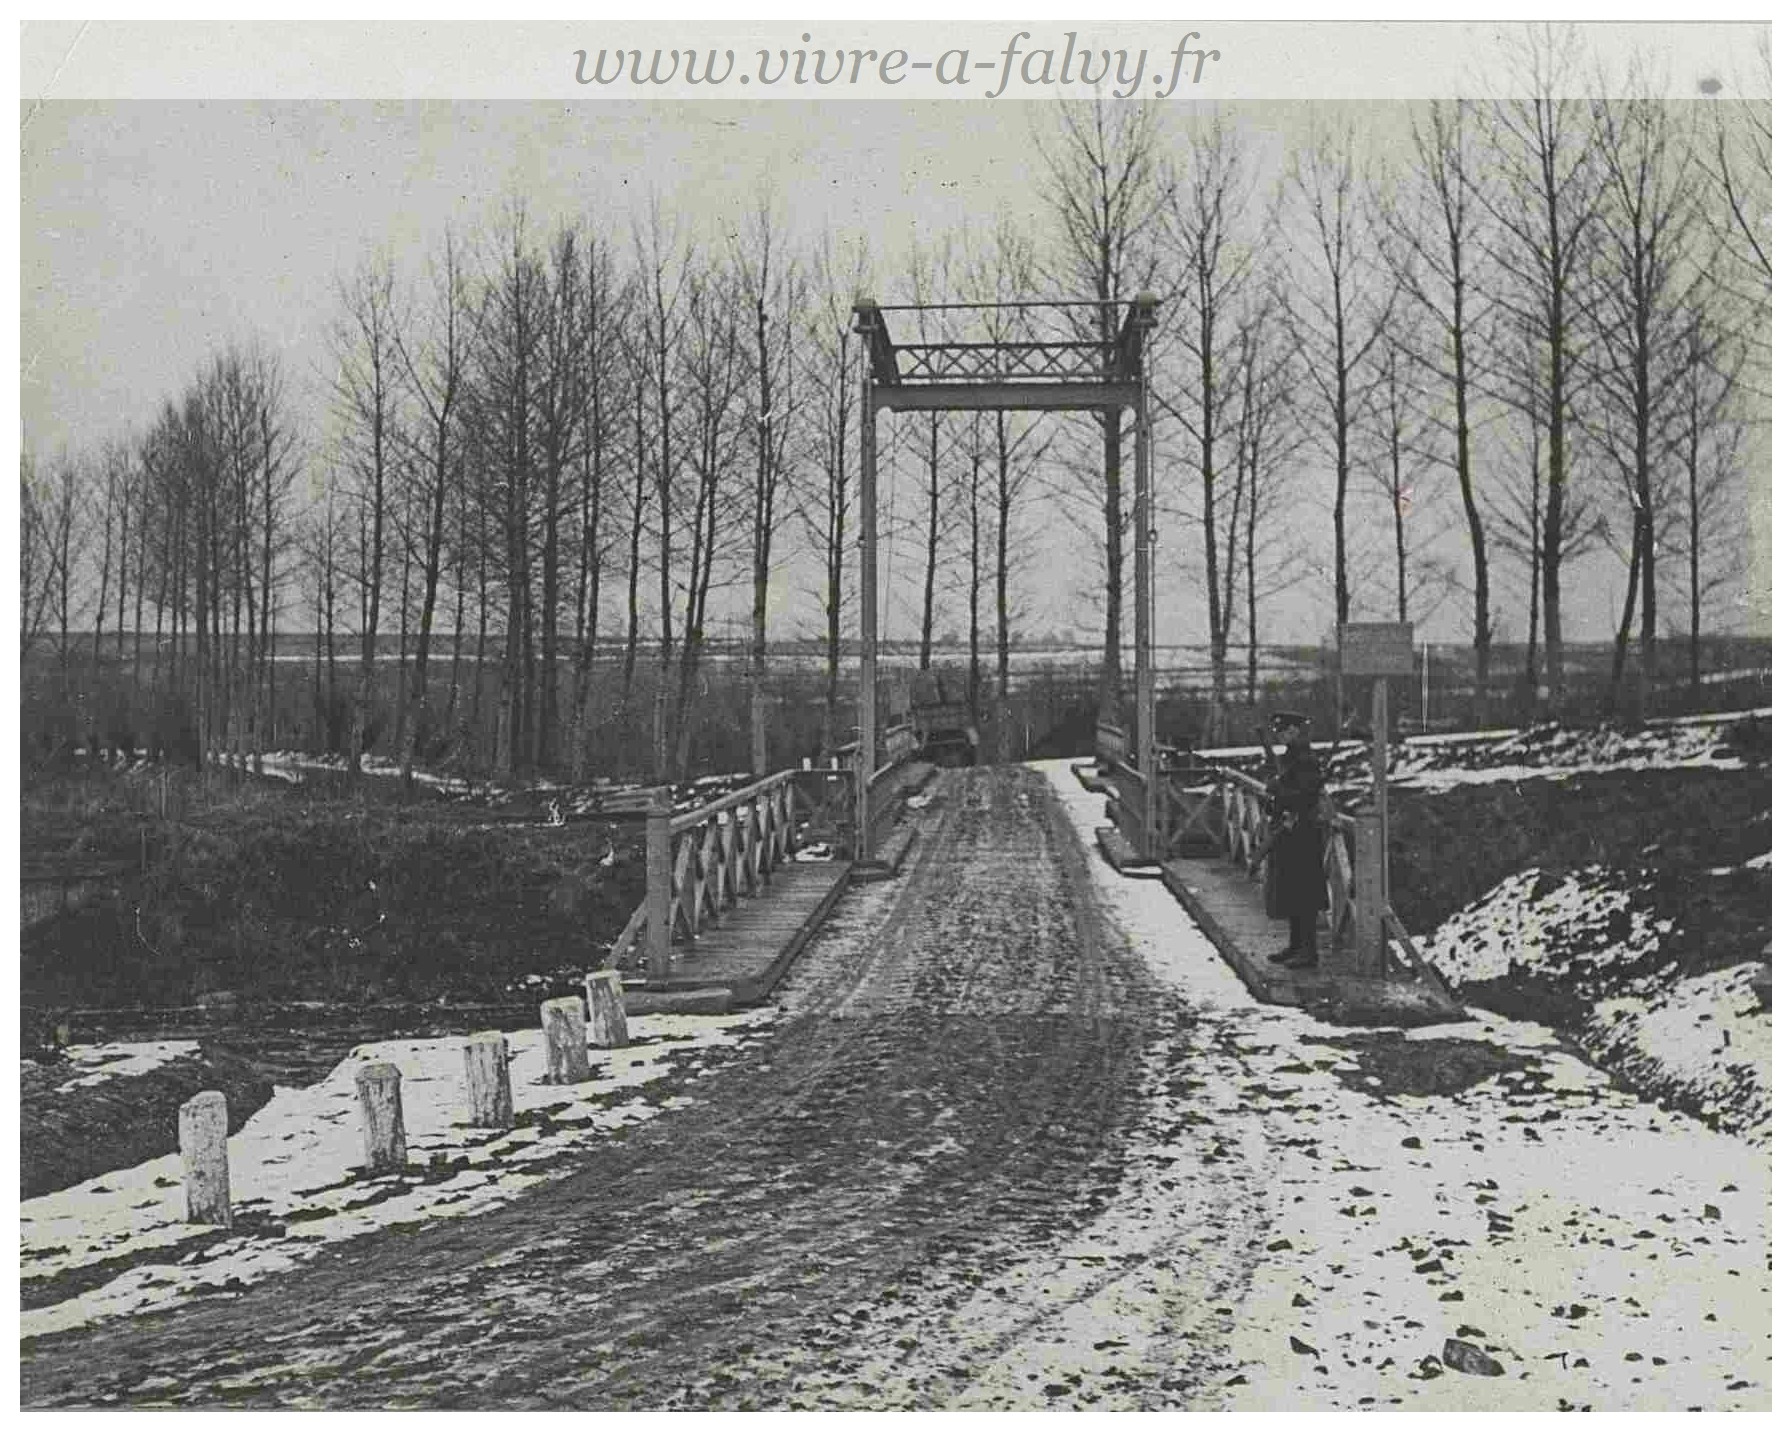 Pargny - Canal de la Somme Pont levant 14 janvier 1918